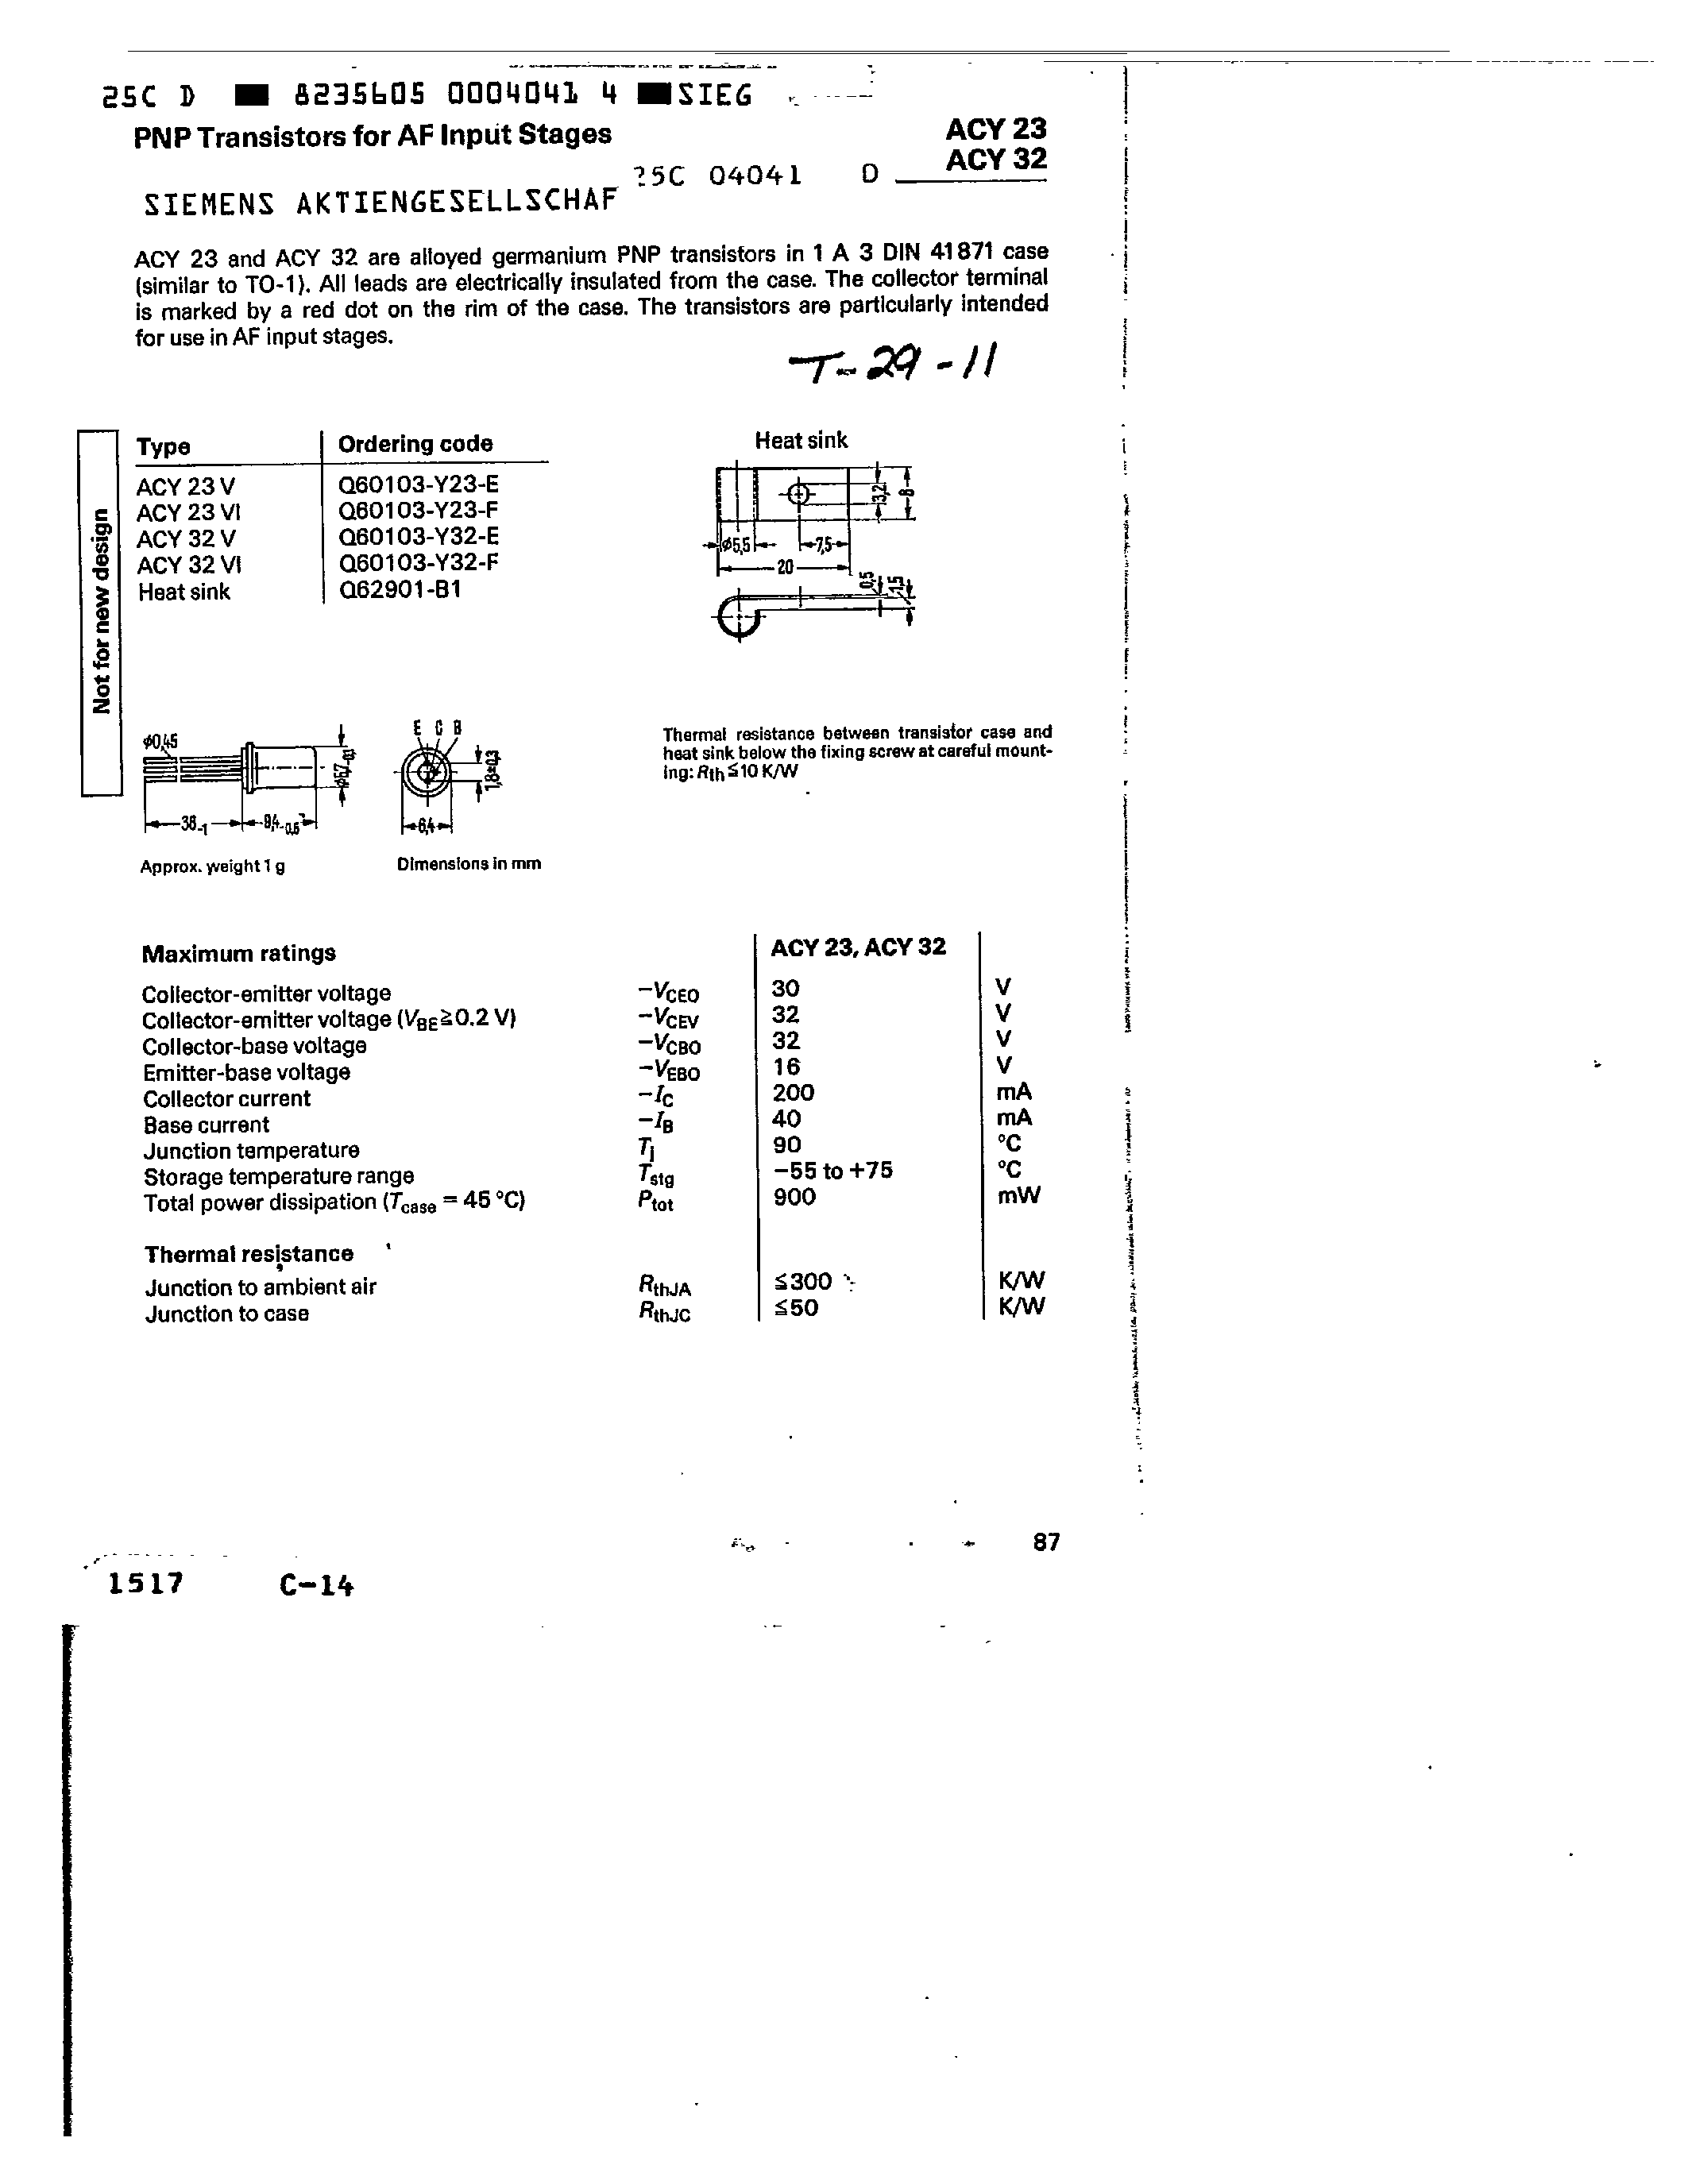 Datasheet Q60103-Y23-E - PNP TRANSISTORS FOR AF INPUT STAGES page 1